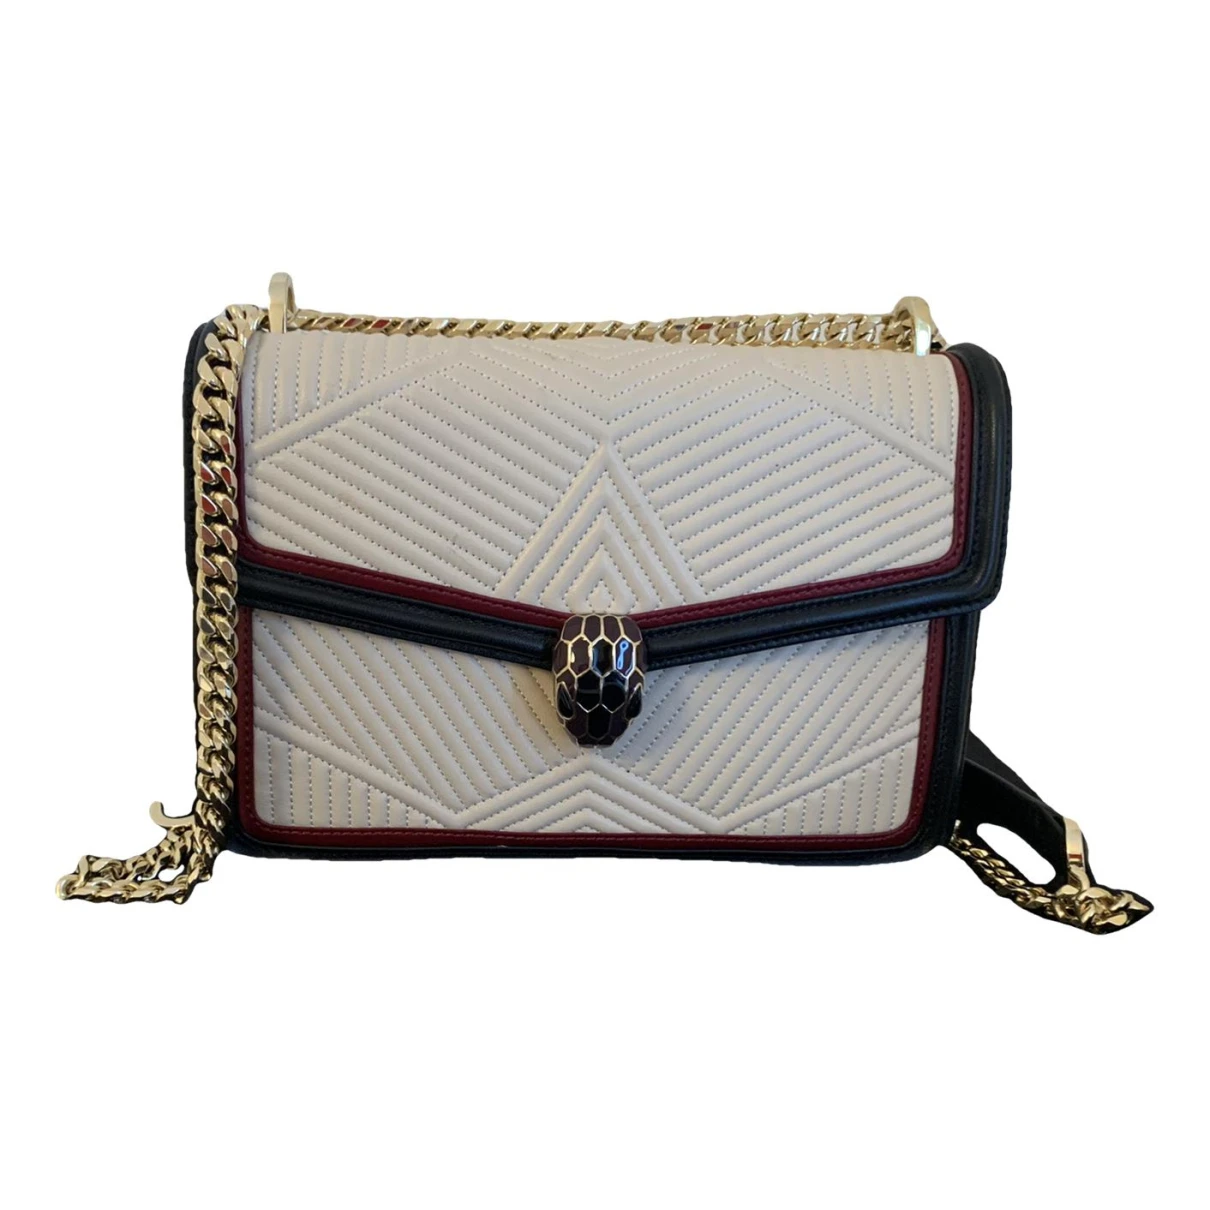 Pre-owned Bvlgari Serpenti Leather Handbag In Multicolour